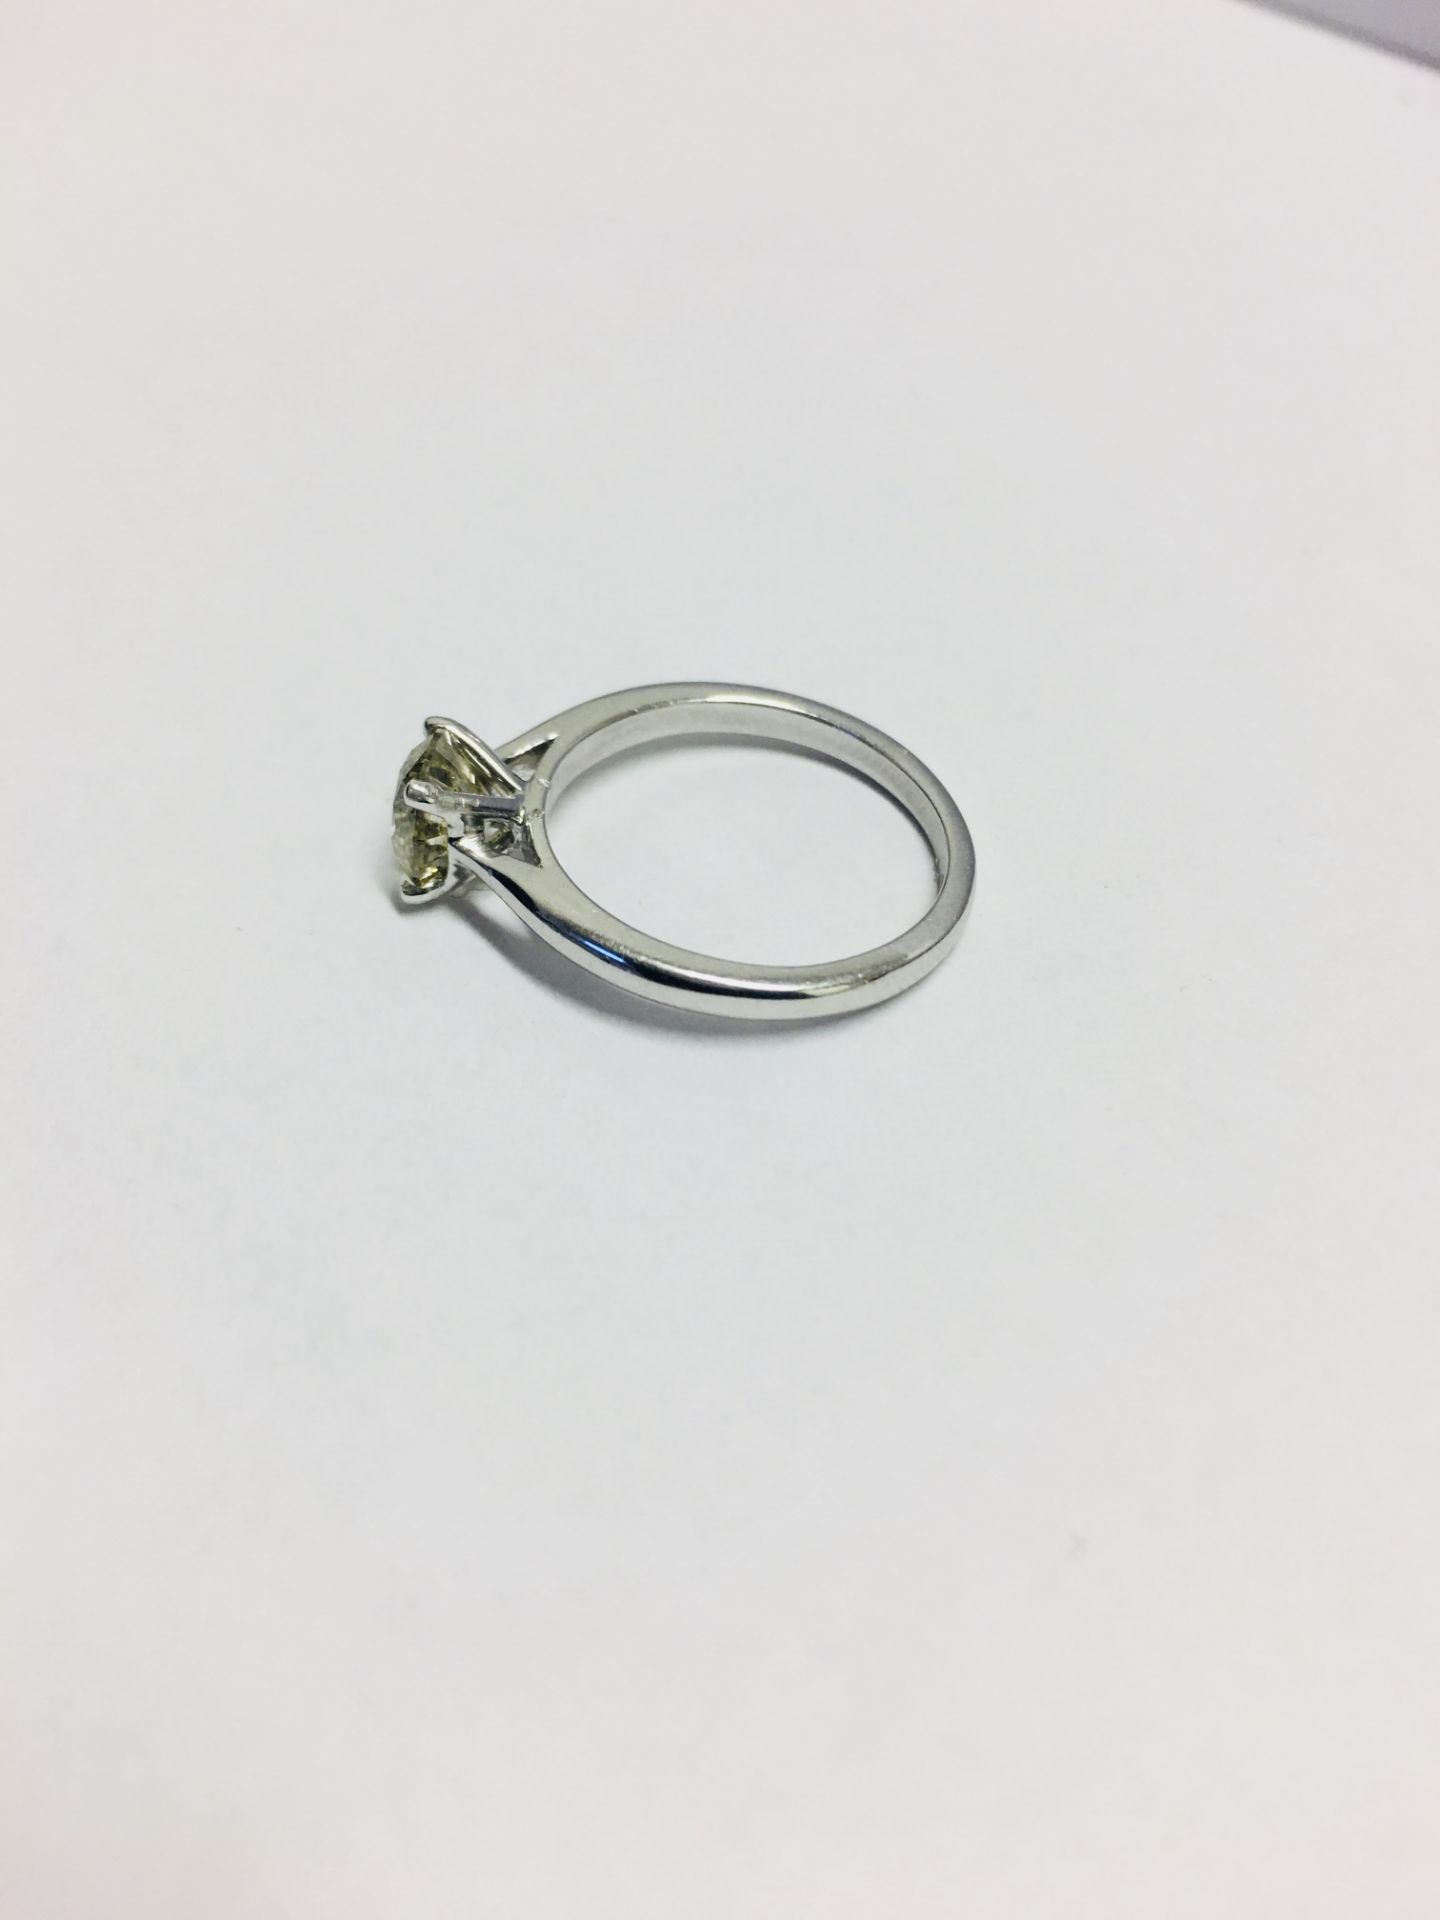 0.50Ct Diamond Set Solitaire Ring Set In Platinum. - Image 3 of 4